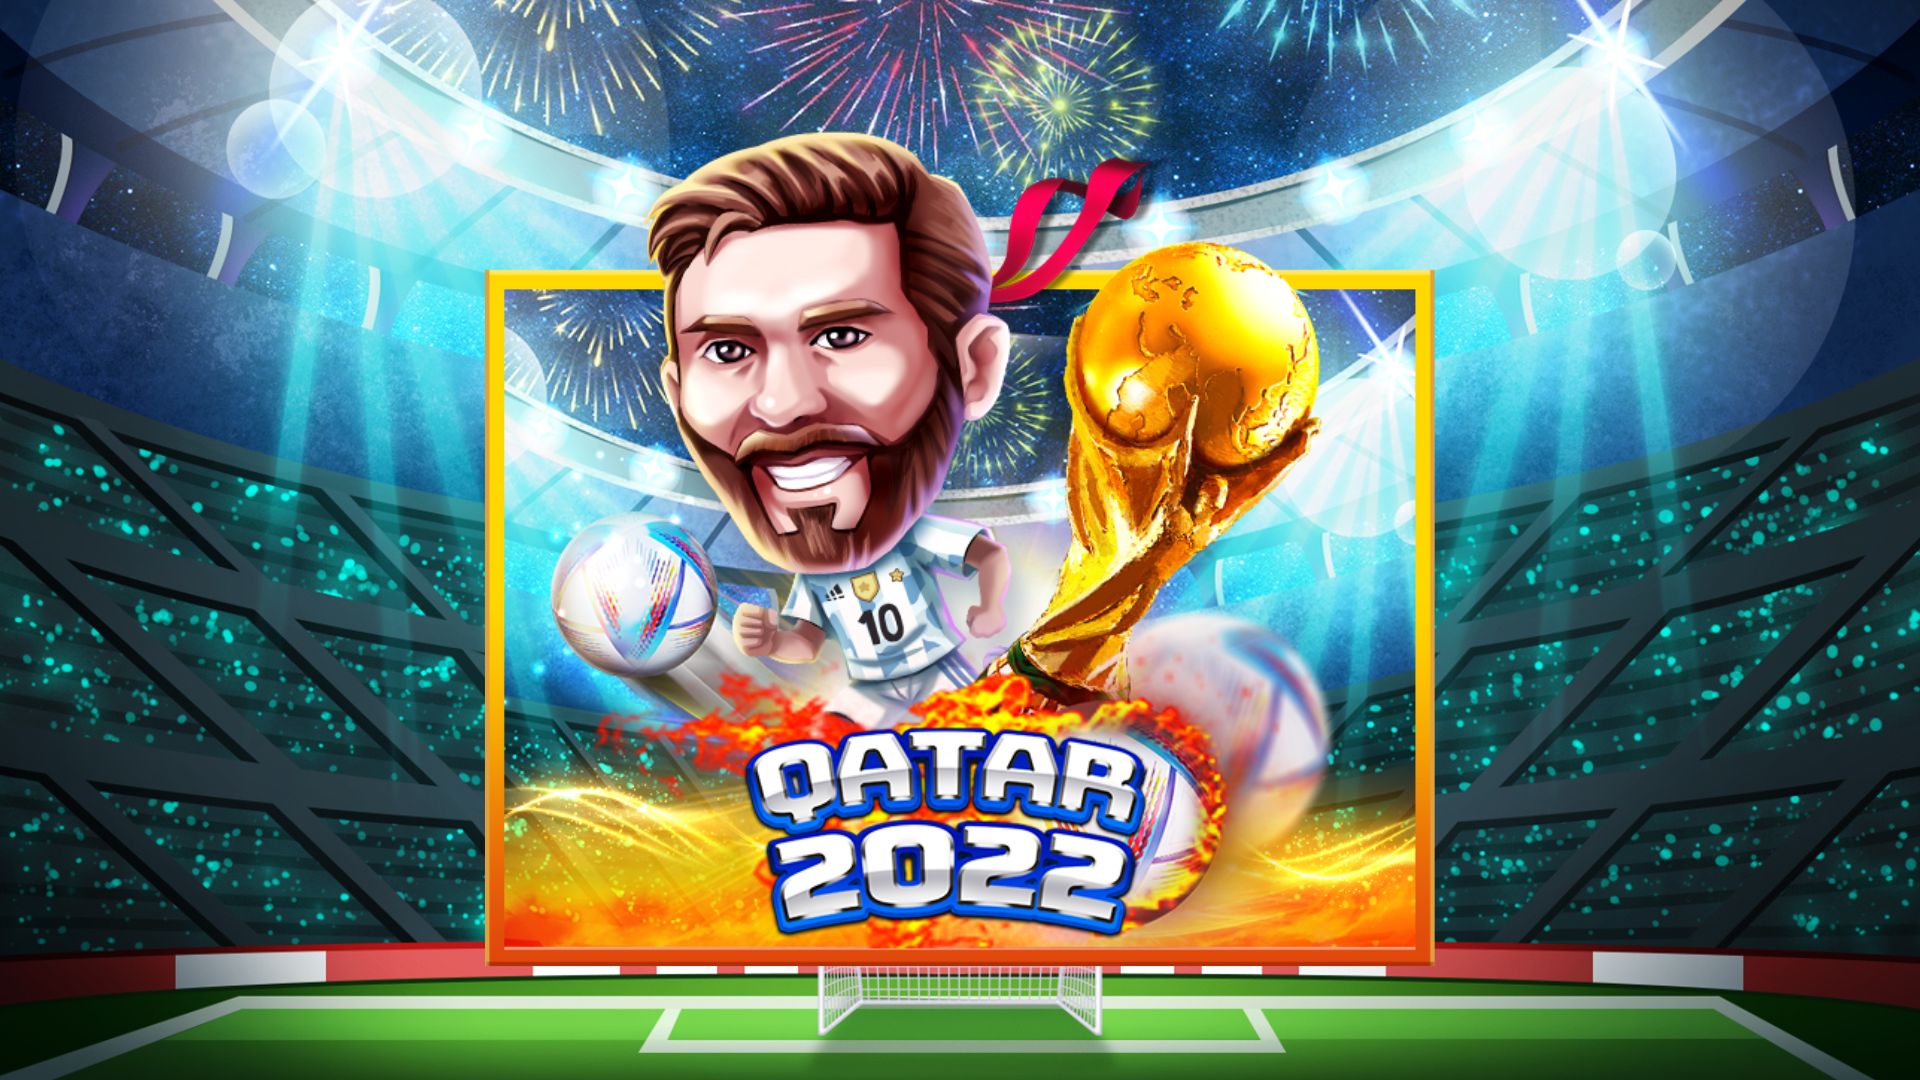 game slot online qatar 2022